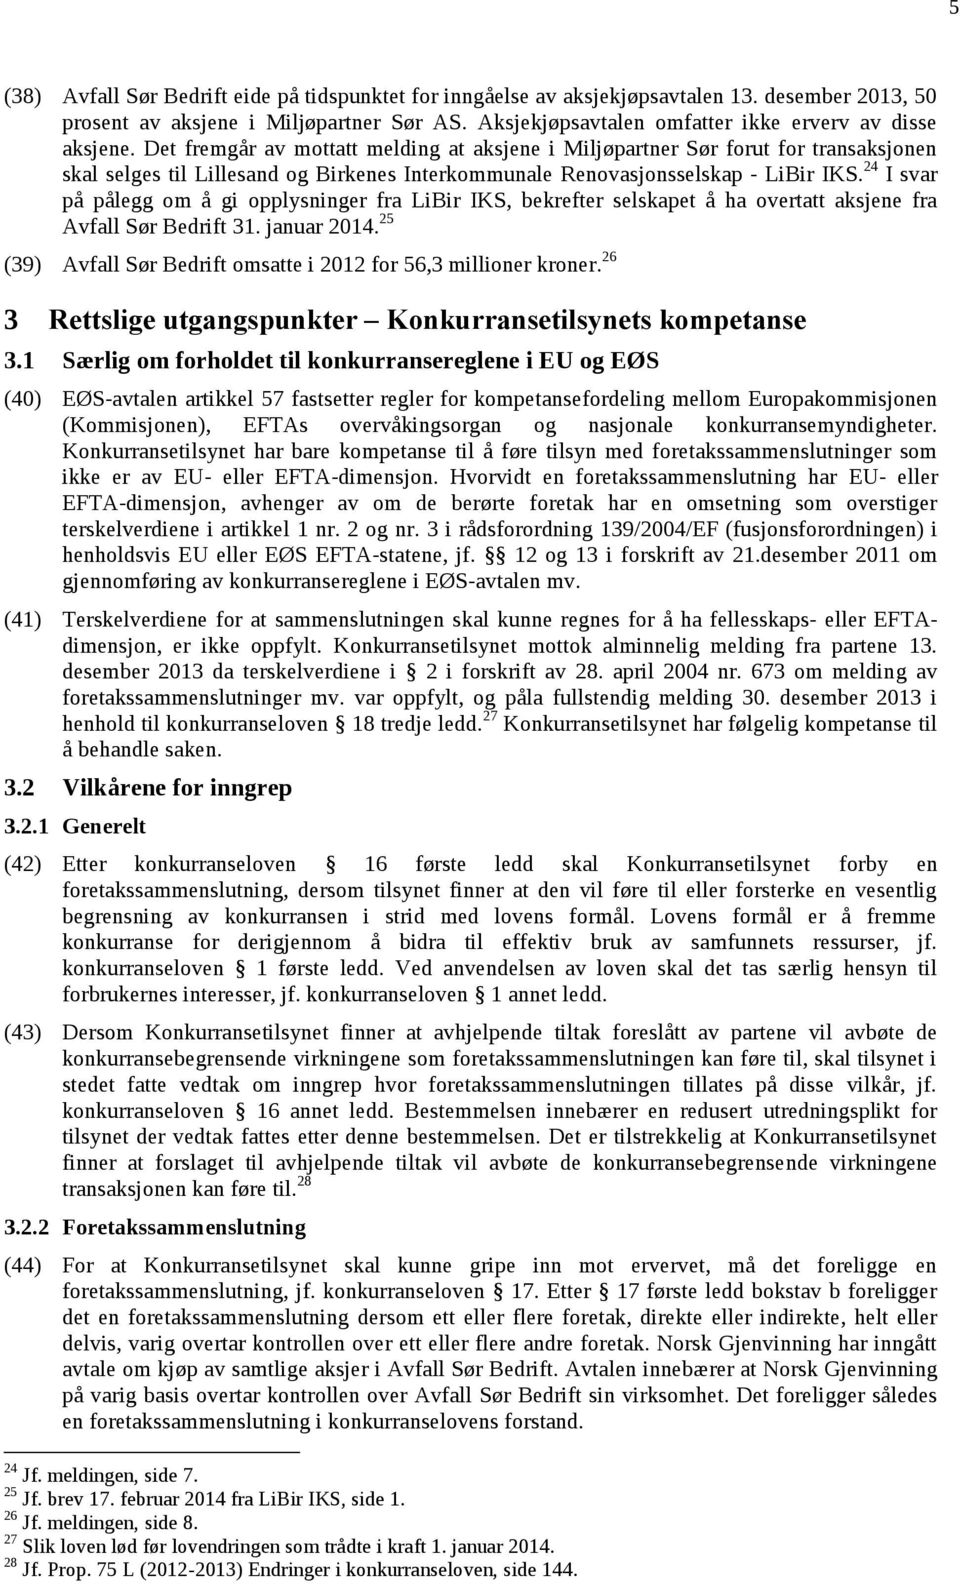 Det fremgår av mottatt melding at aksjene i Miljøpartner Sør forut for transaksjonen skal selges til Lillesand og Birkenes Interkommunale Renovasjonsselskap - LiBir IKS.